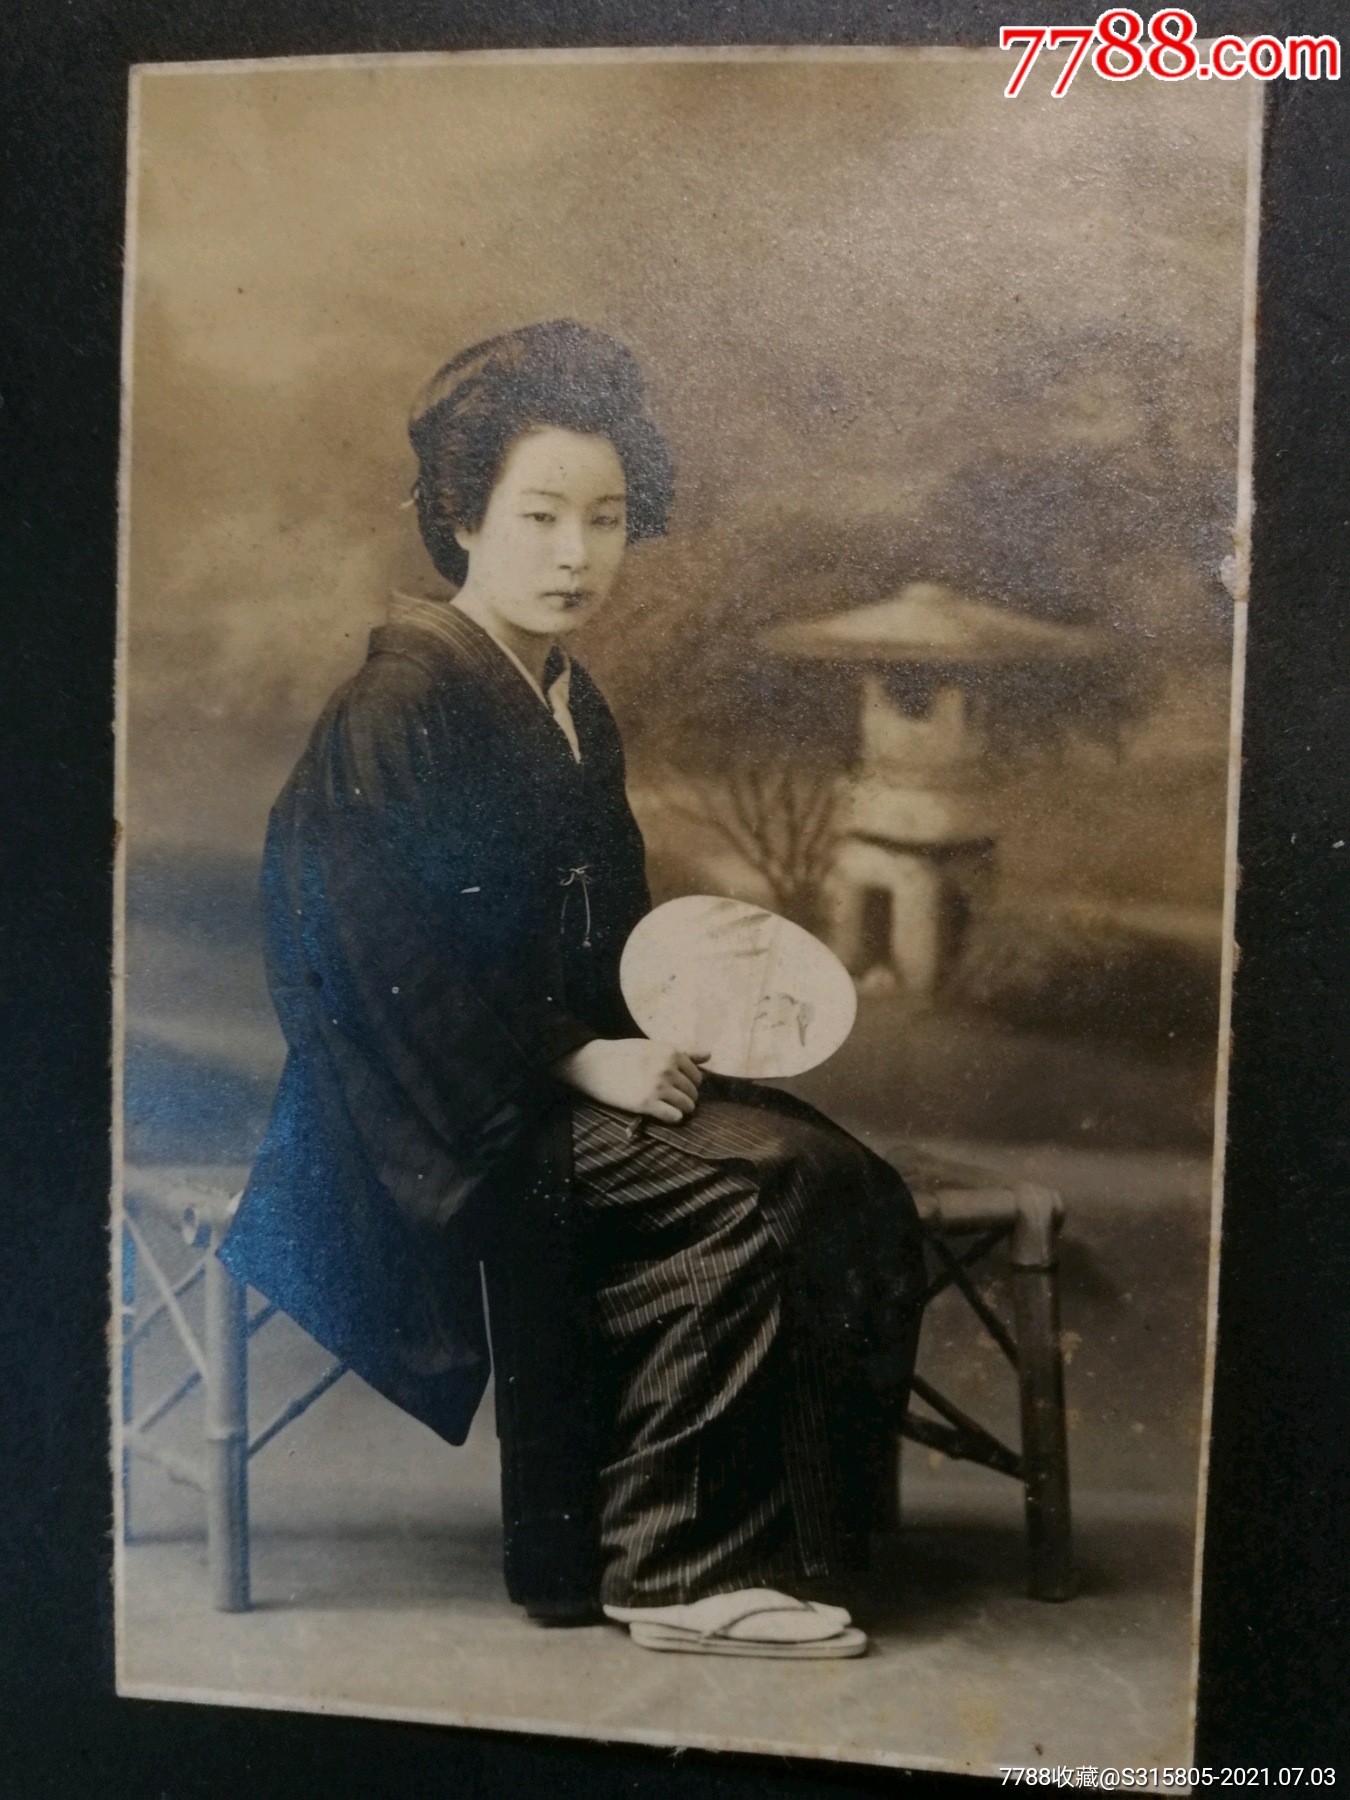 战时相册日军老照片黑白照片和服美人结婚照日风生活照昭和时期老相册